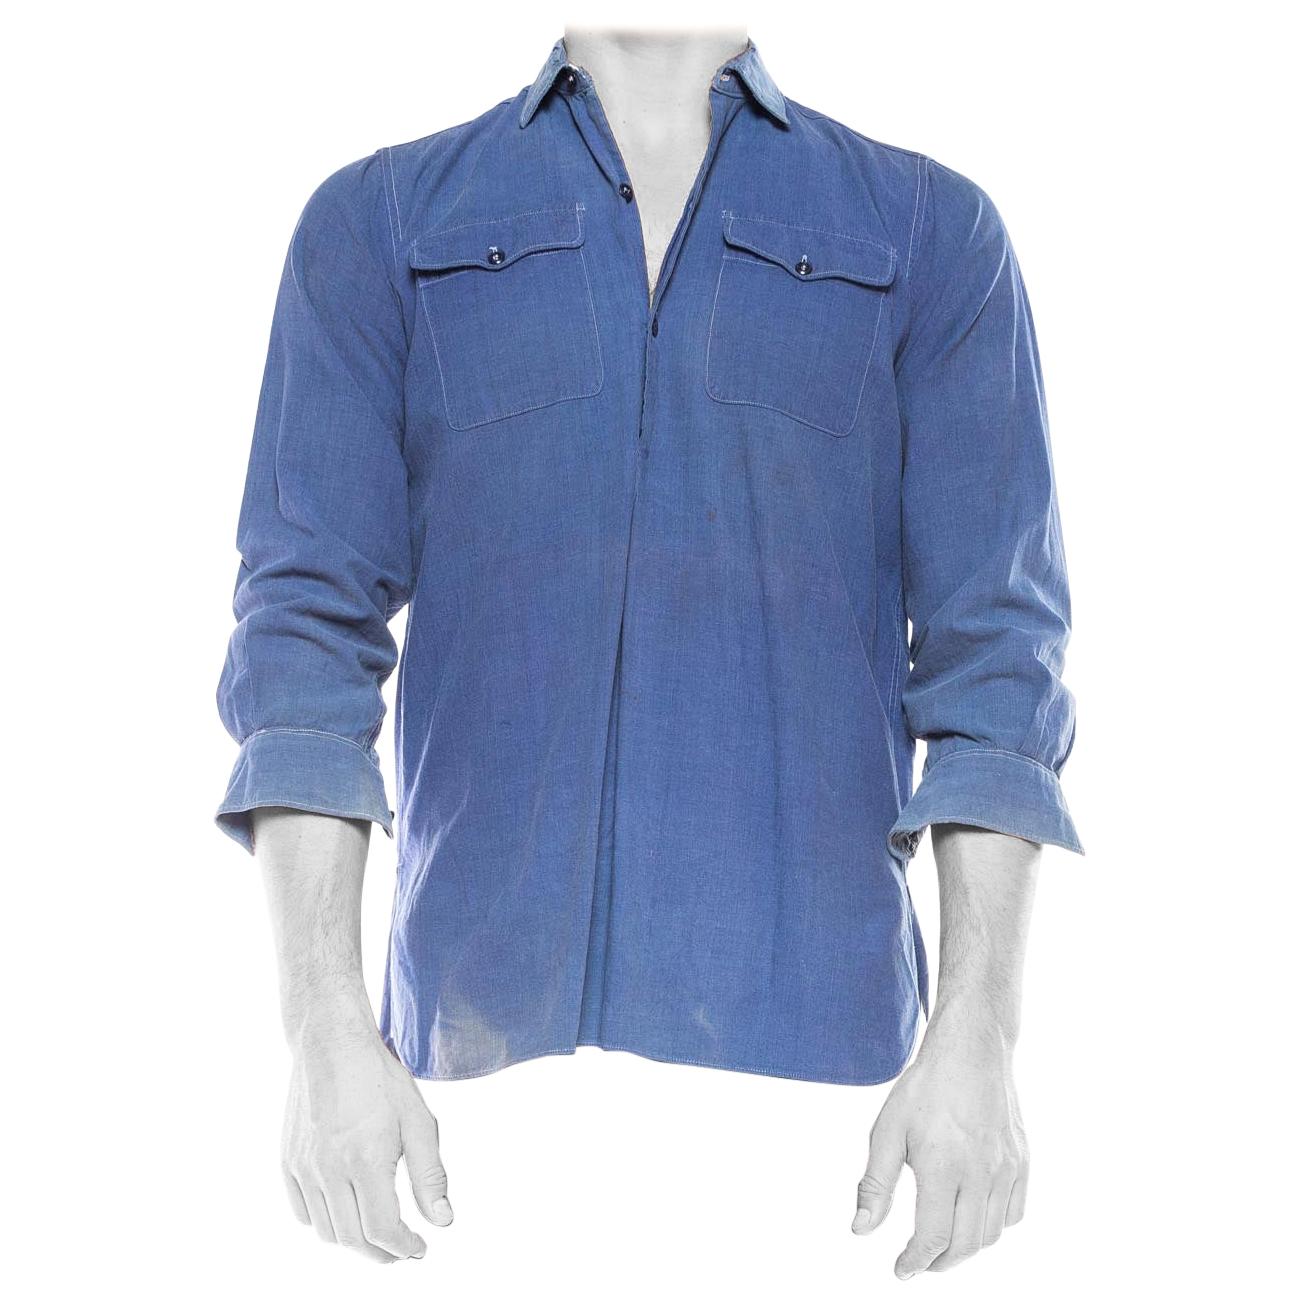 Blau, 1950er Jahre  Baumwolle Herren Workwear Pullover Shirt mit Patch-Taschen